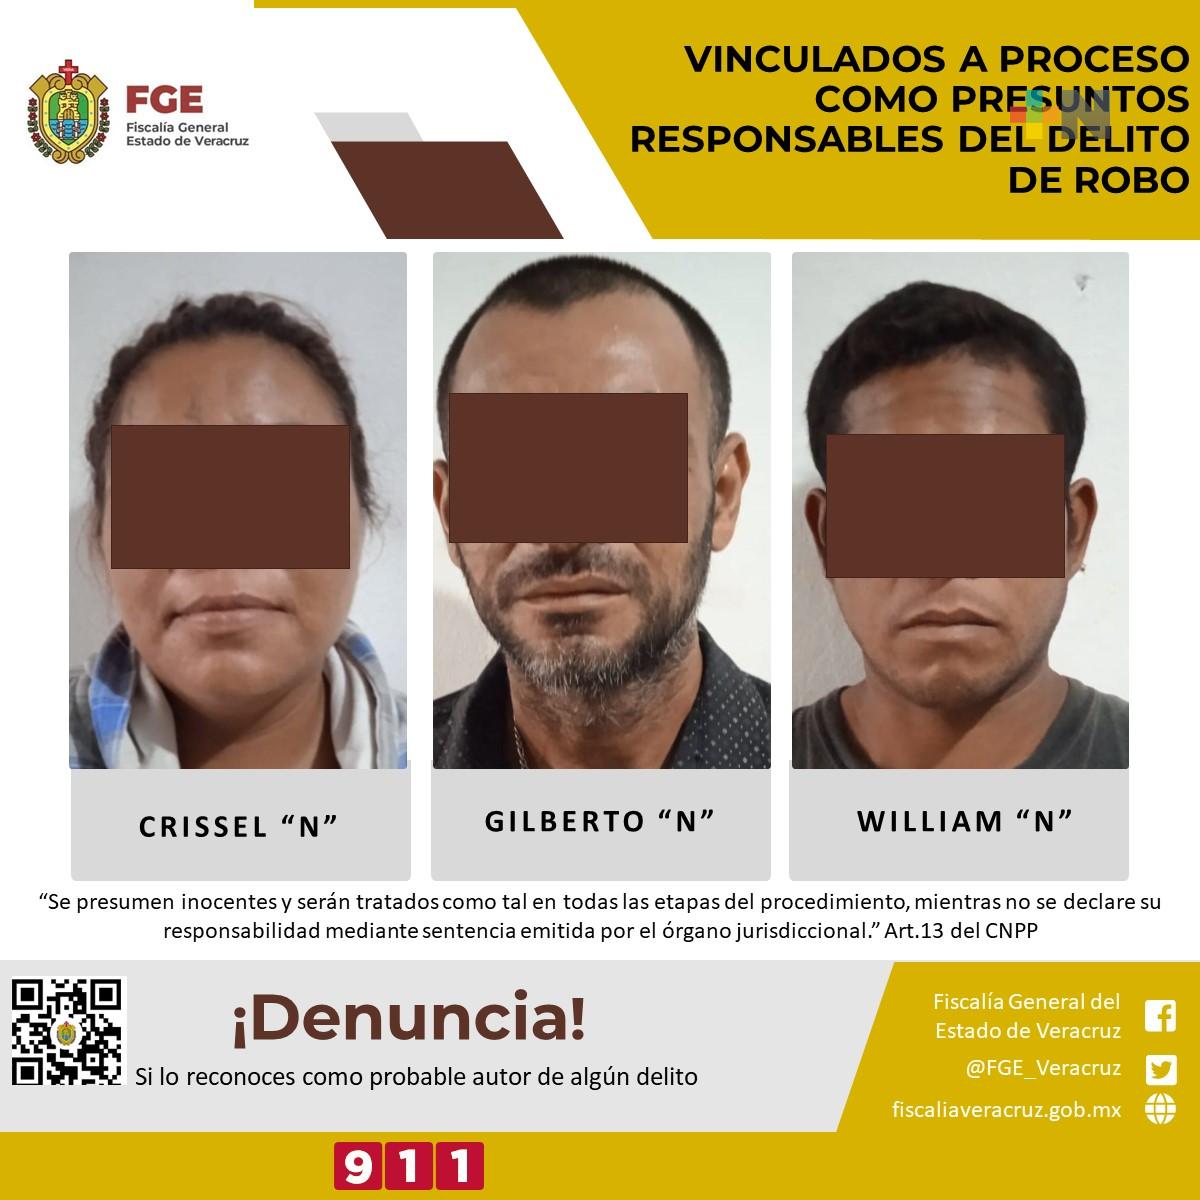 Crissel “N”, William “N” y Gilberto “N” vinculados a proceso como responsables del delito de robo